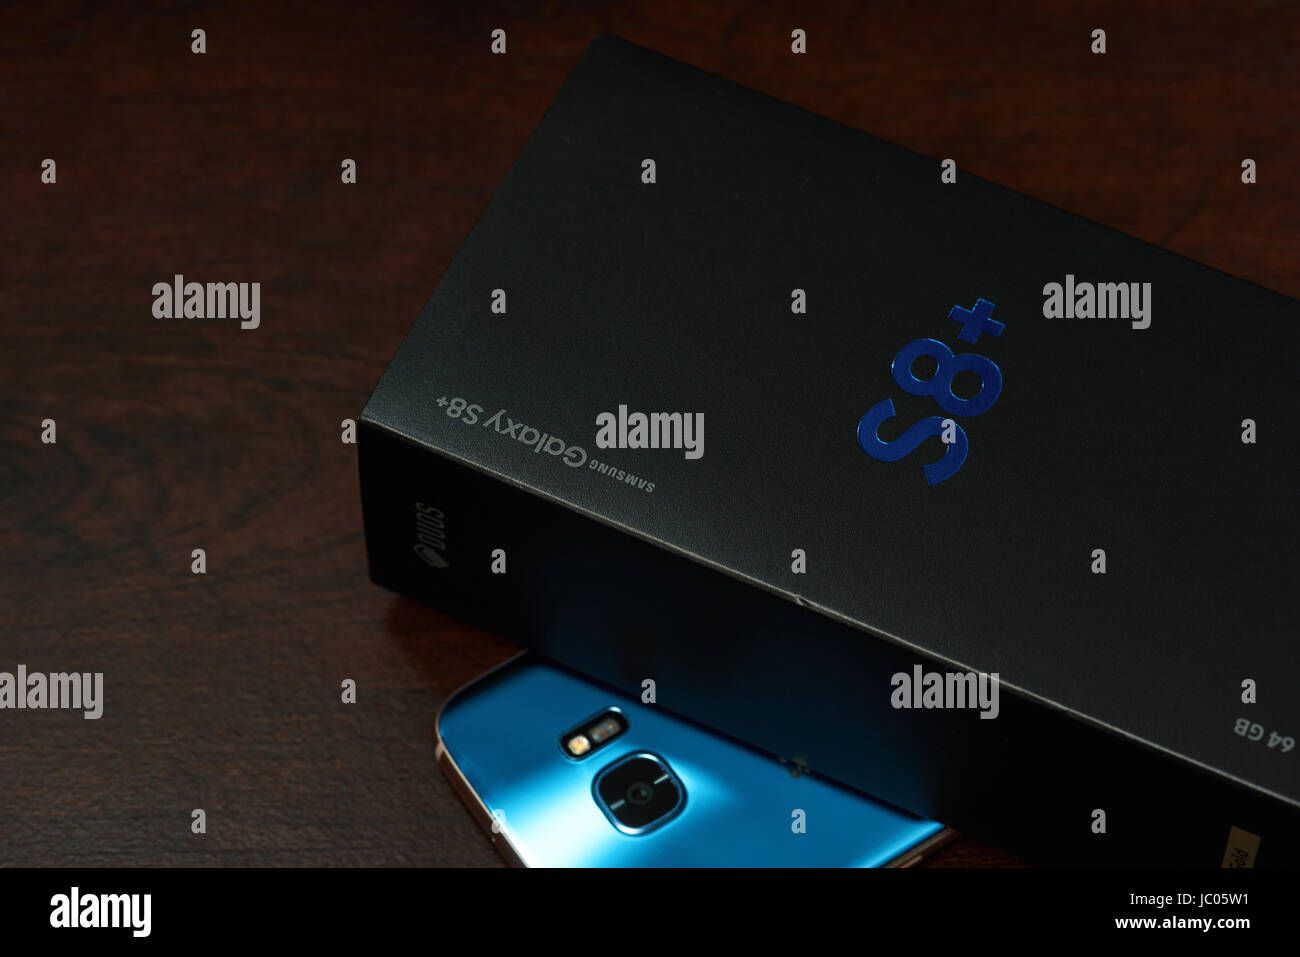 Samsung galaxy s8 plus immagini e fotografie stock ad alta risoluzione -  Alamy